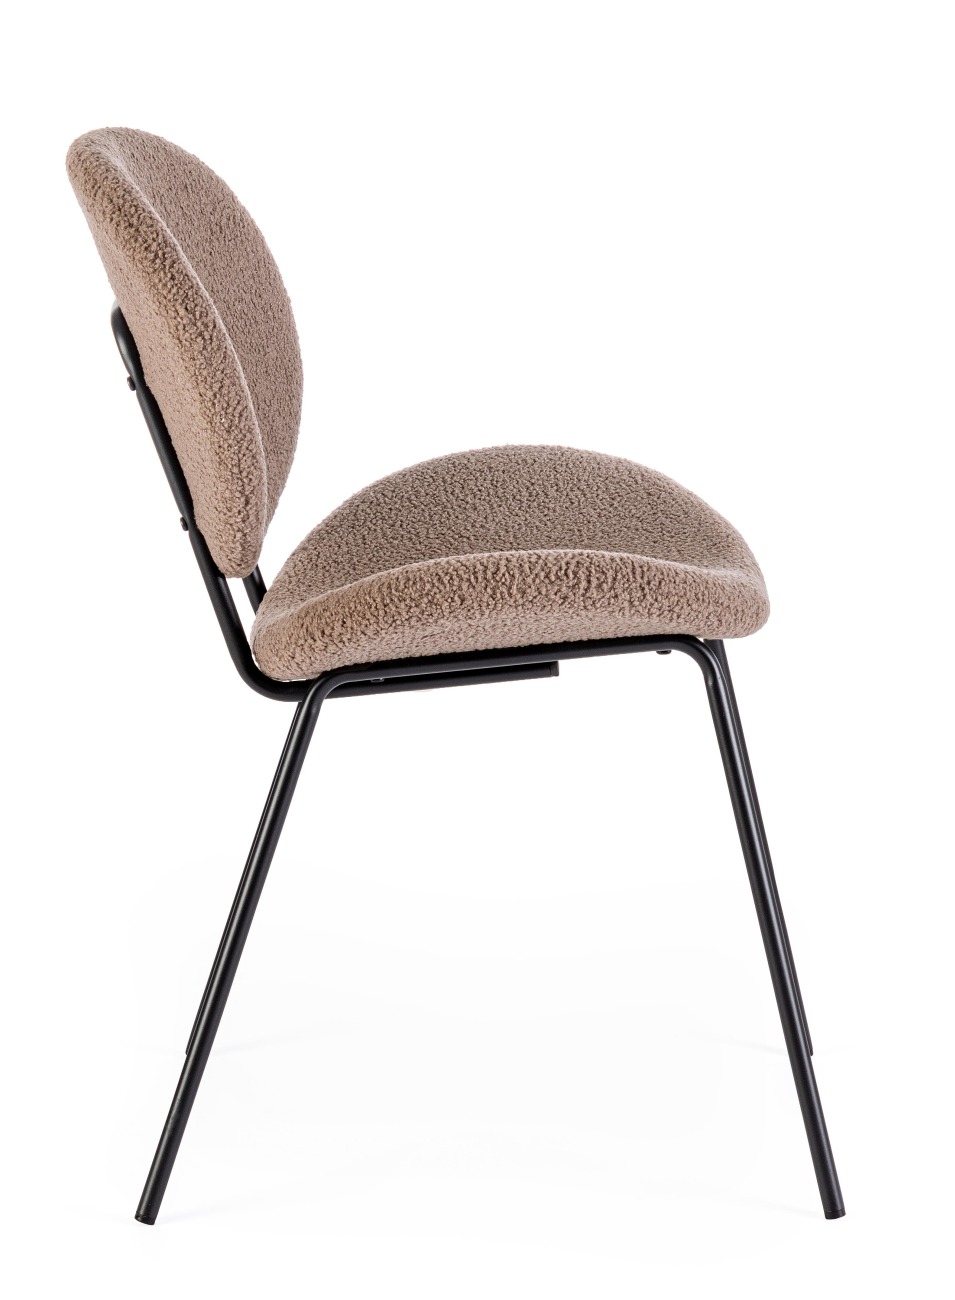 Der Esszimmerstuhl Maddie überzeugt mit seinem modernen Stil. Gefertigt wurde er aus Boucle-Stoff, welcher einen braunen Farbton besitzt. Das Gestell ist aus Metall und hat eine schwarze Farbe. Der Stuhl besitzt eine Sitzhöhe von 46 cm.